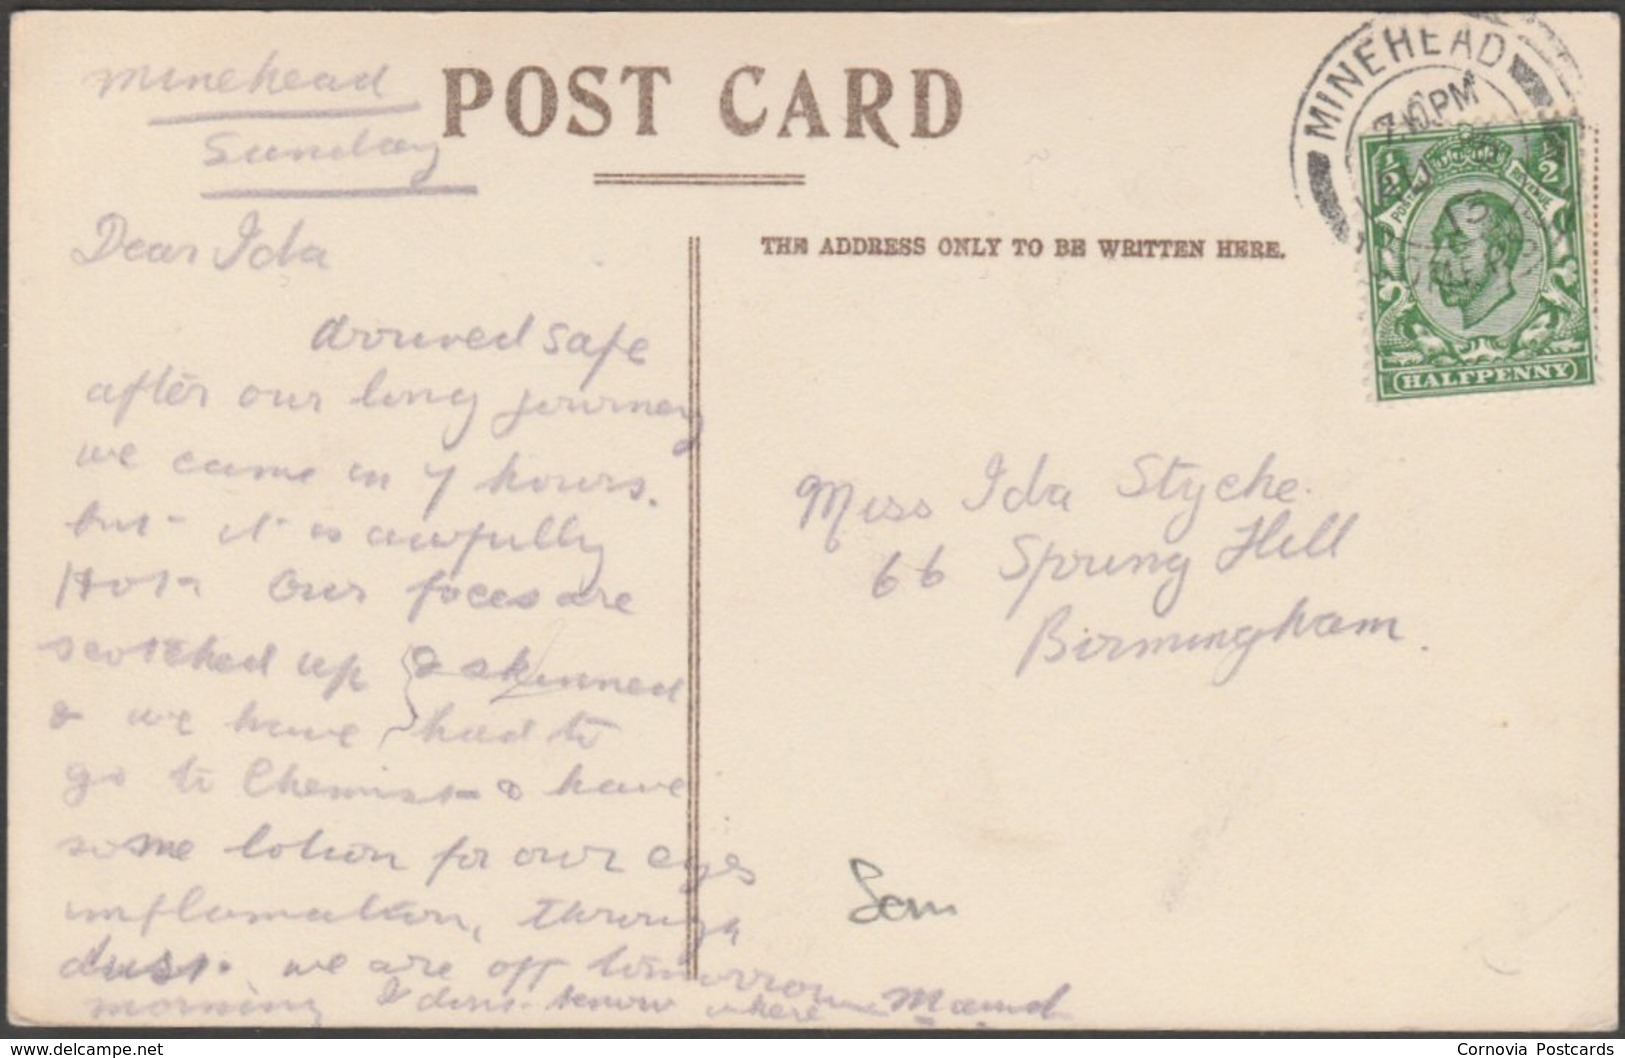 General View, Minehead, Somerset, 1913 - Postcard - Minehead